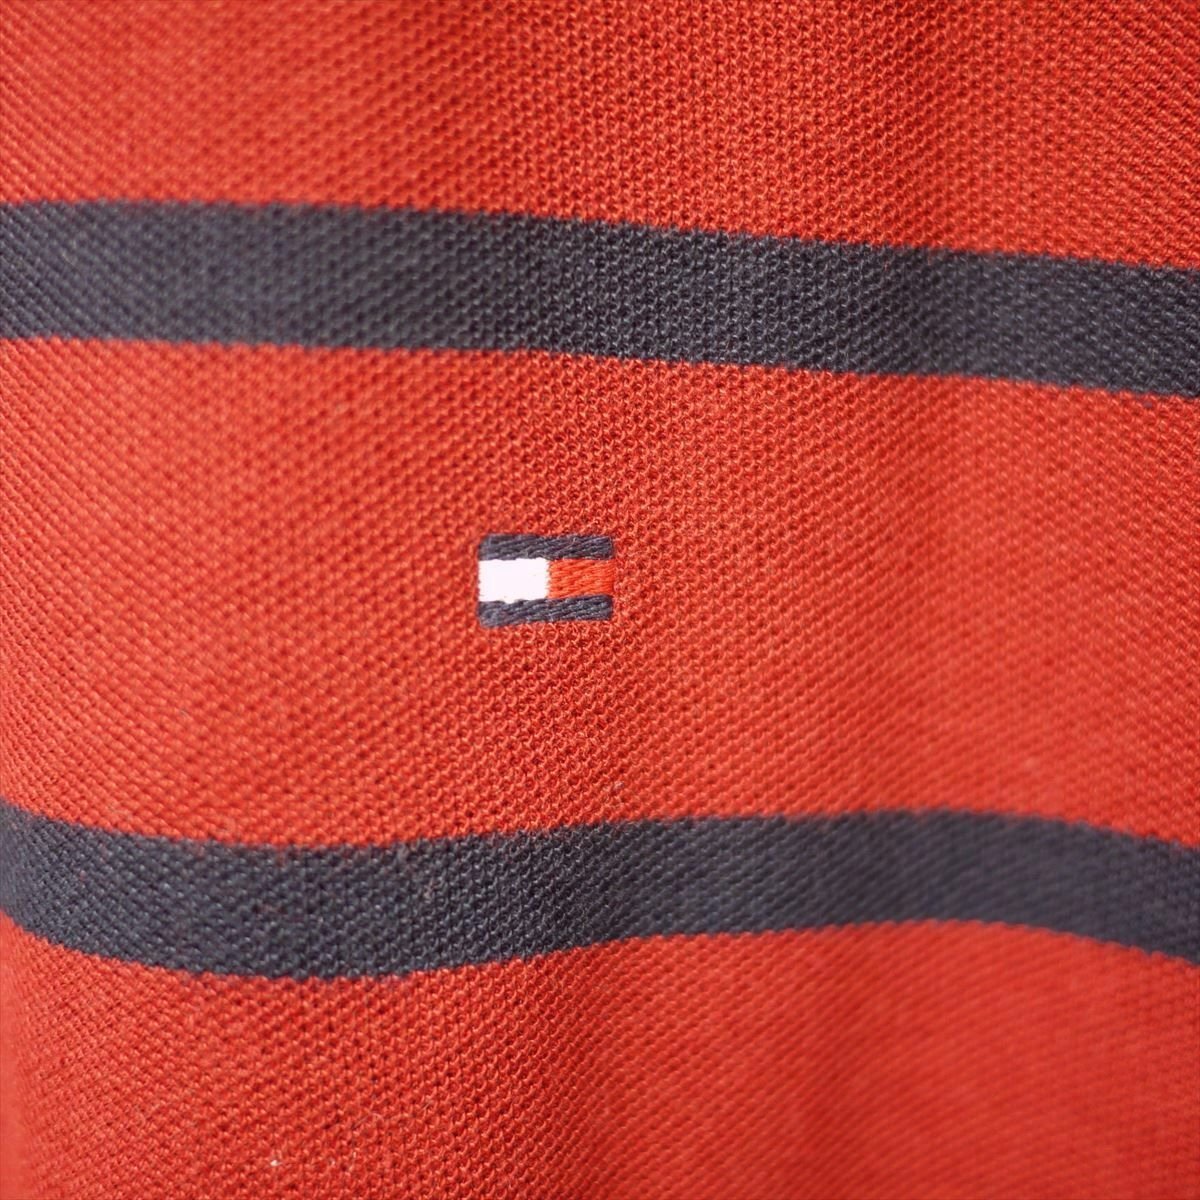  новый товар Tommy Hilfiger скорость . водонепроницаемый 4 person направление стрейч рубашка-поло (L) красный x темно-синий окантовка Golf тоже!TOMMY HILFIGER USA модель /ba4